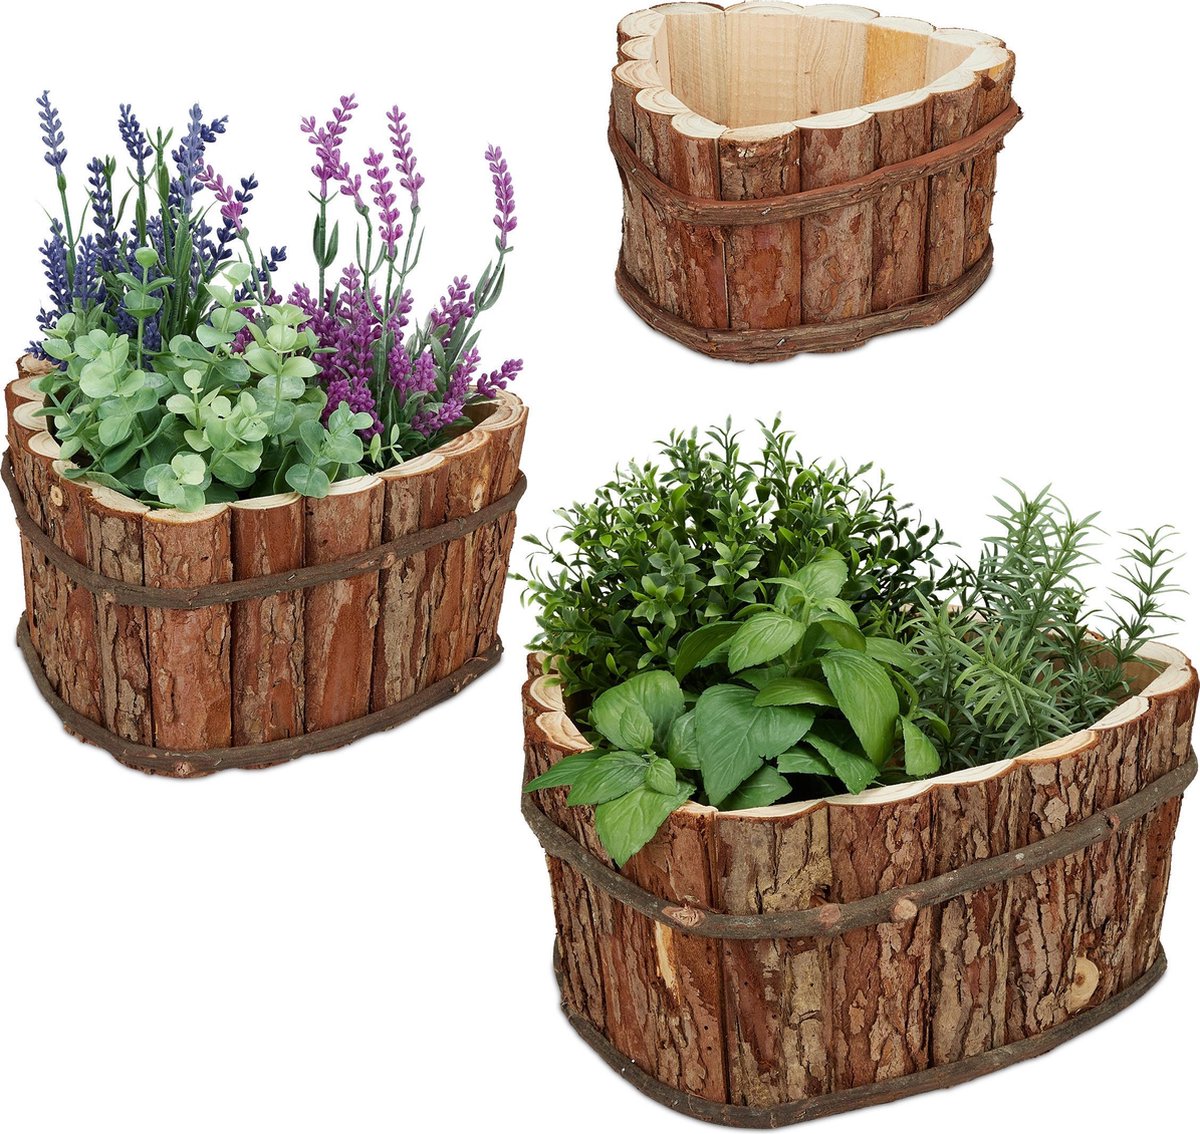 Relaxdays plantenbak hout 3 bloembakken buiten bloempotten tuin houten tuindecoratie